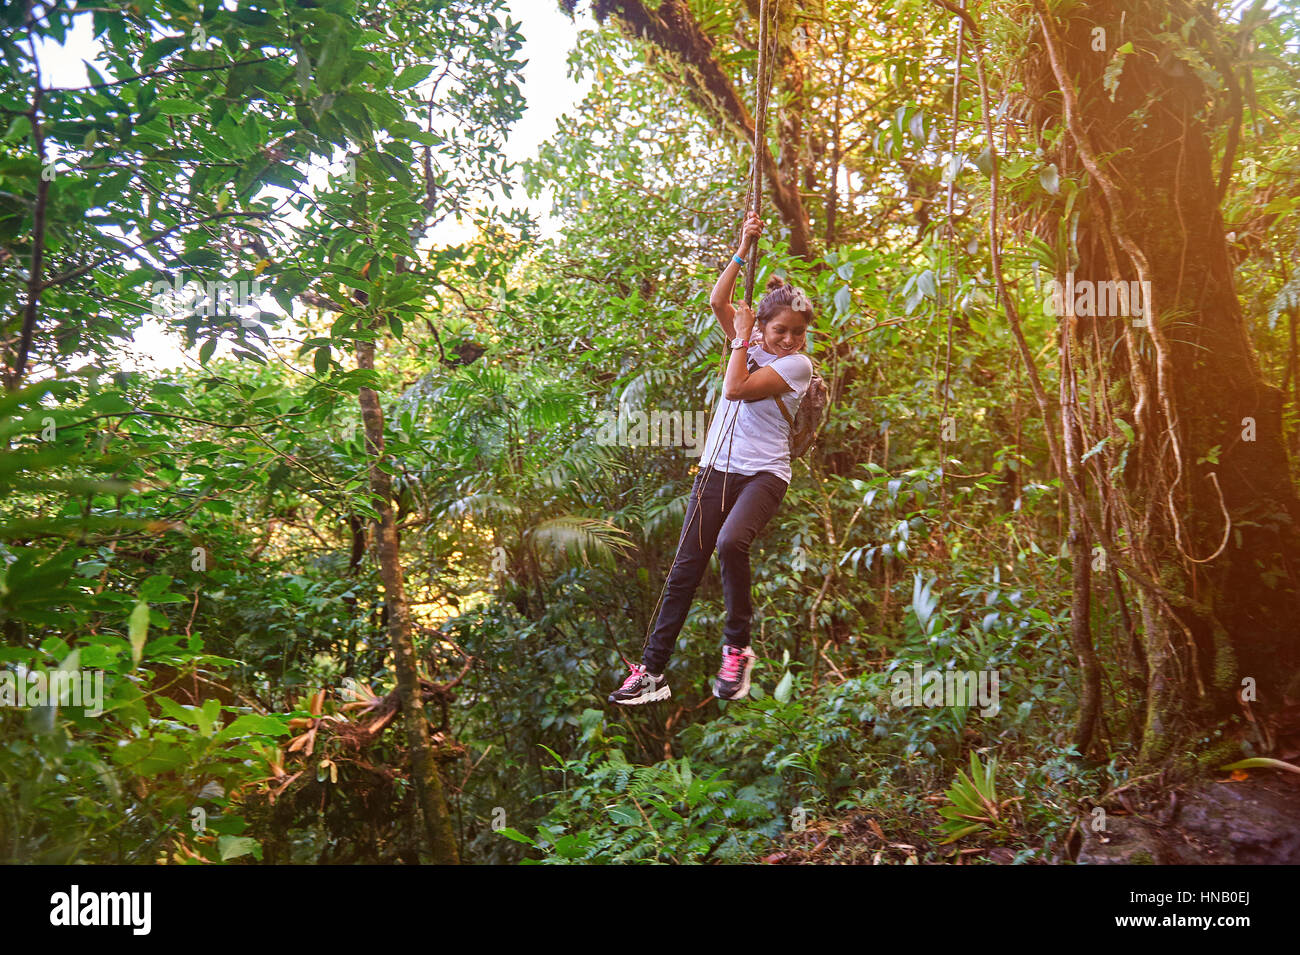 Mädchen hängen an Liane in Wanderung im Dschungel Stockfotografie - Alamy